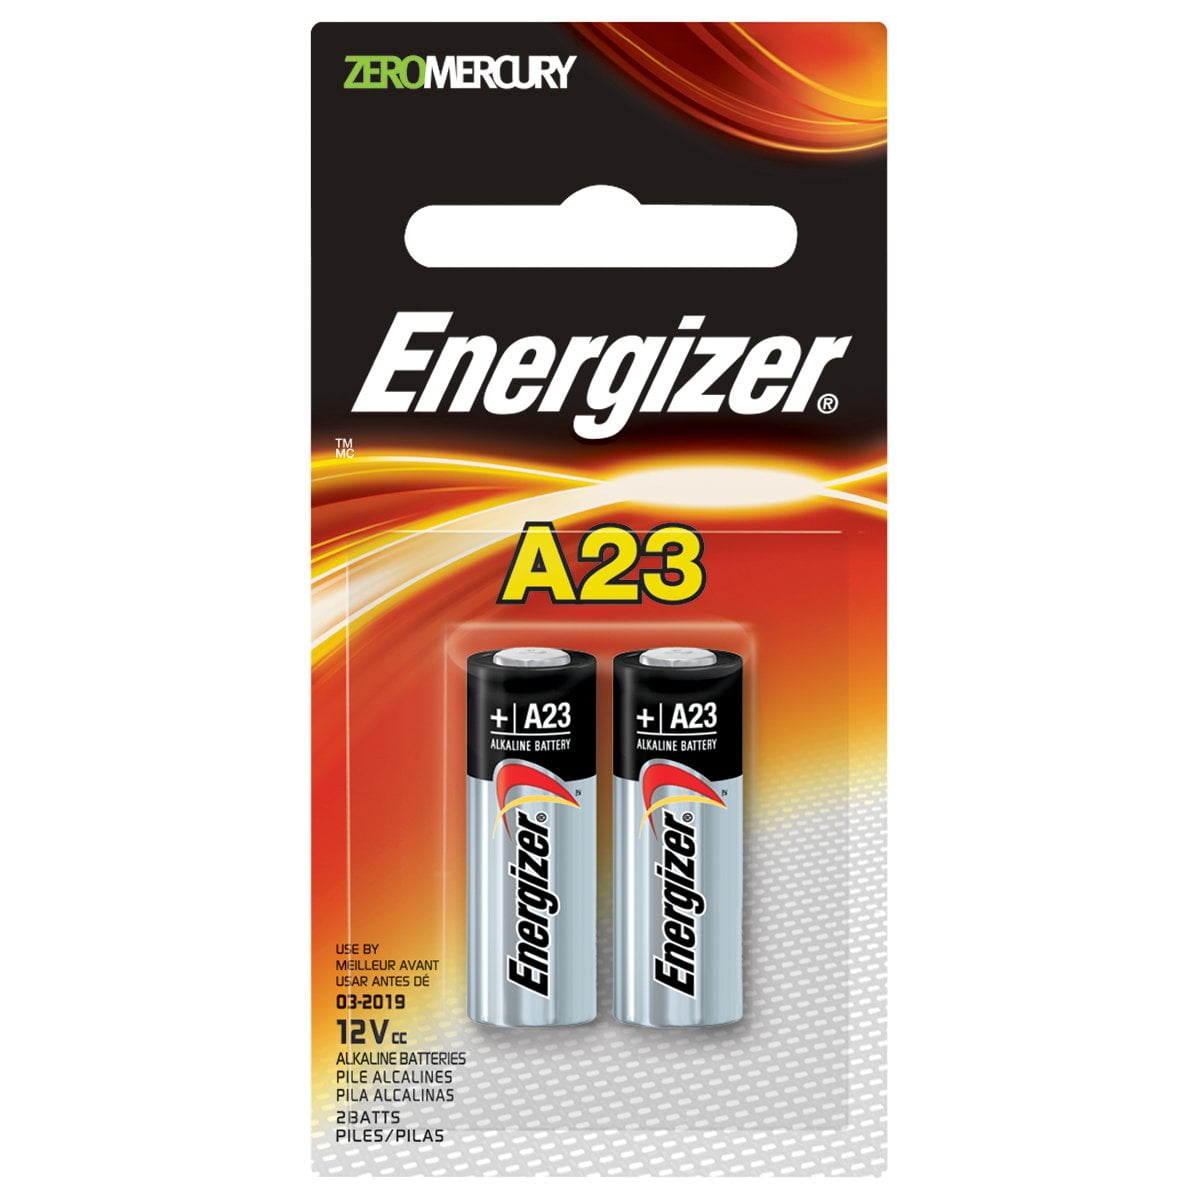 A23 Battery, 12 Volt - 2 Pack